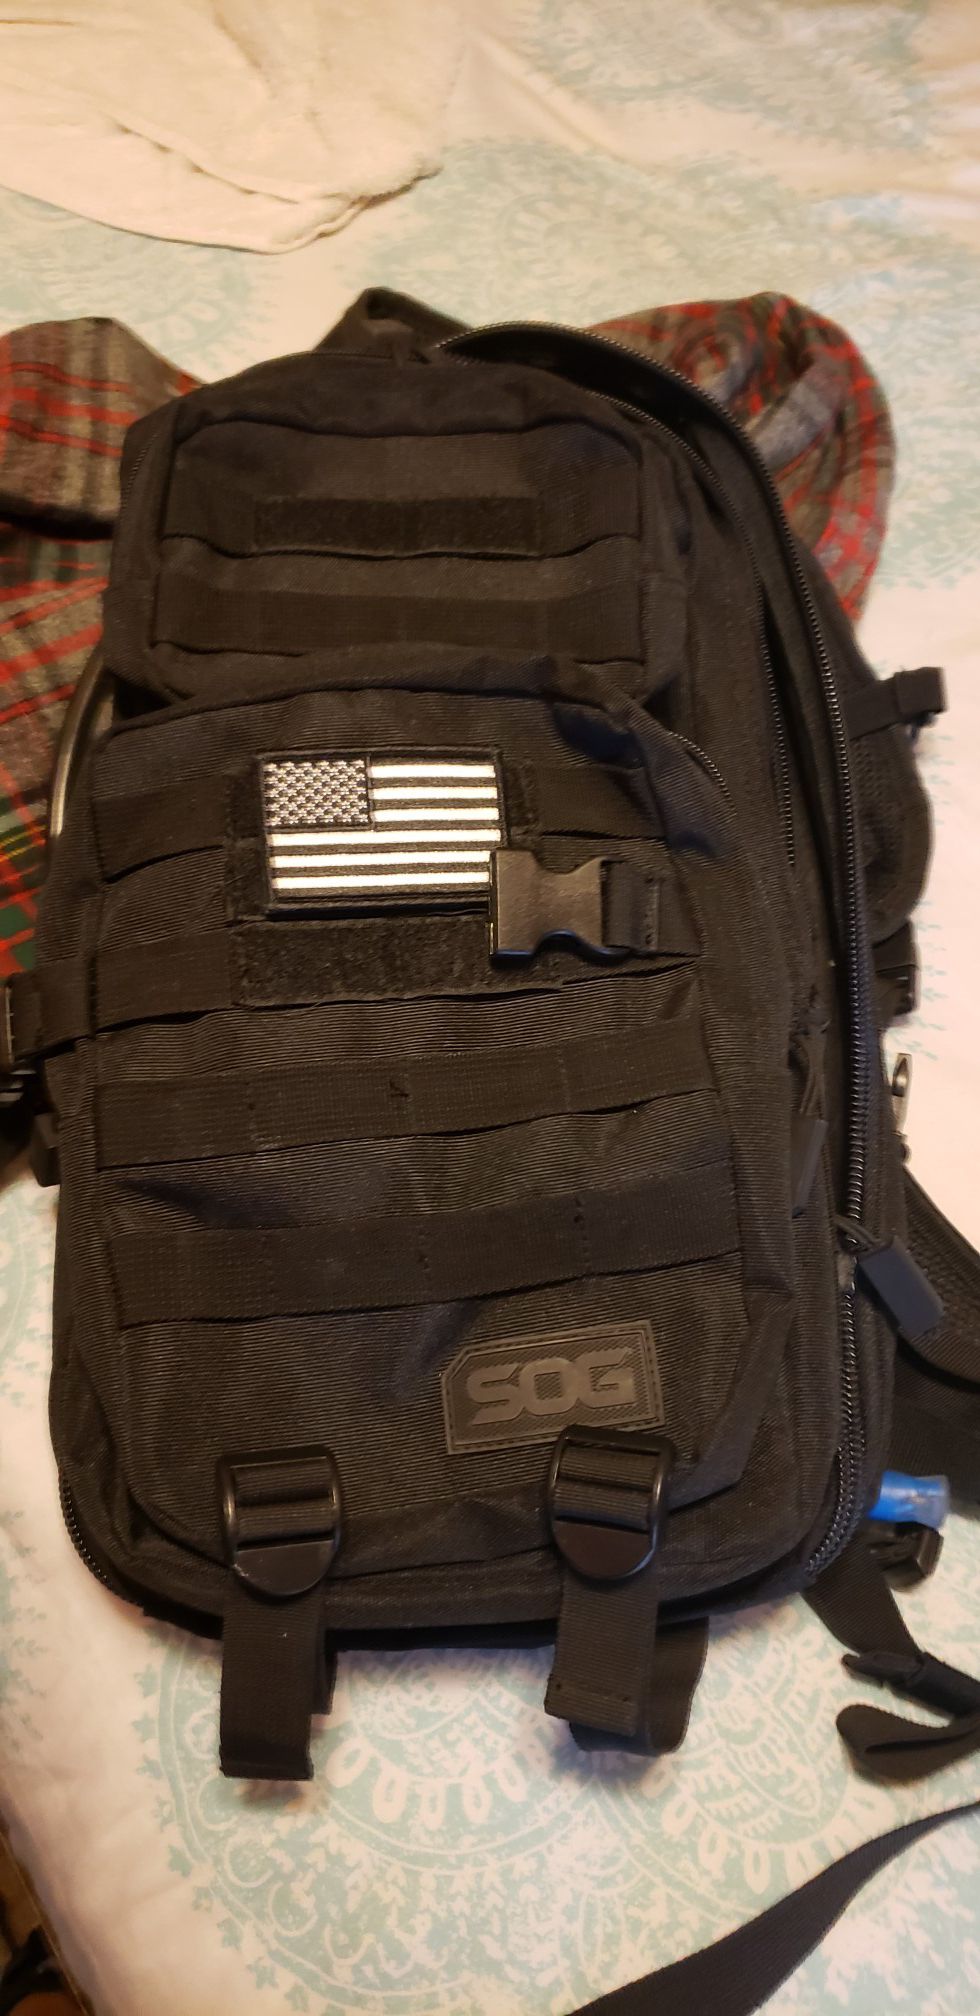 Sog tactical backpack